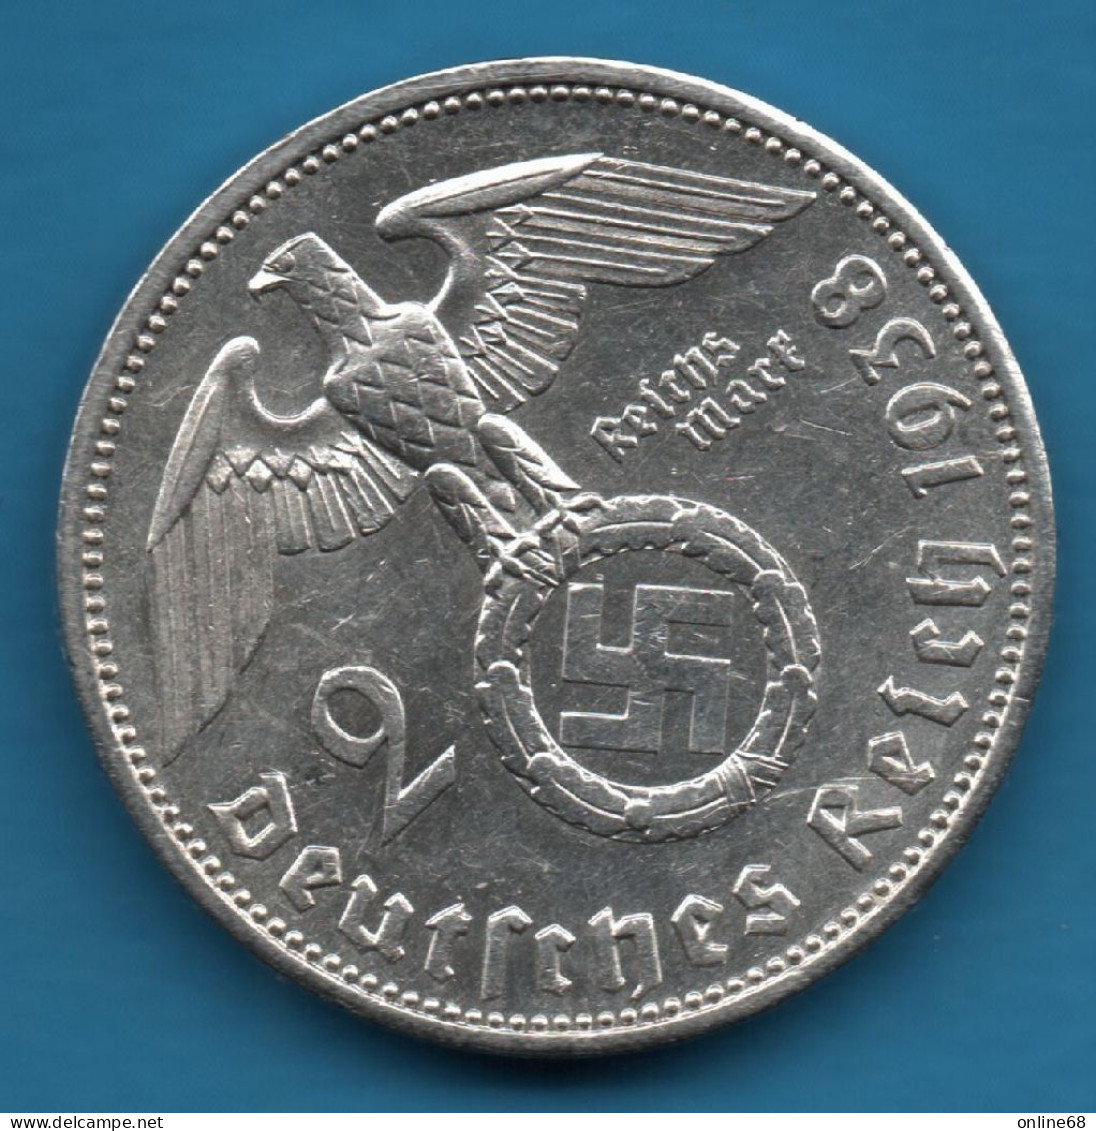 DEUTSCHES REICH 2 REICHSMARK 1938 A KM# 93 Argent 625‰ Silver Paul Von Hindenburg Svastika - 2 Reichsmark